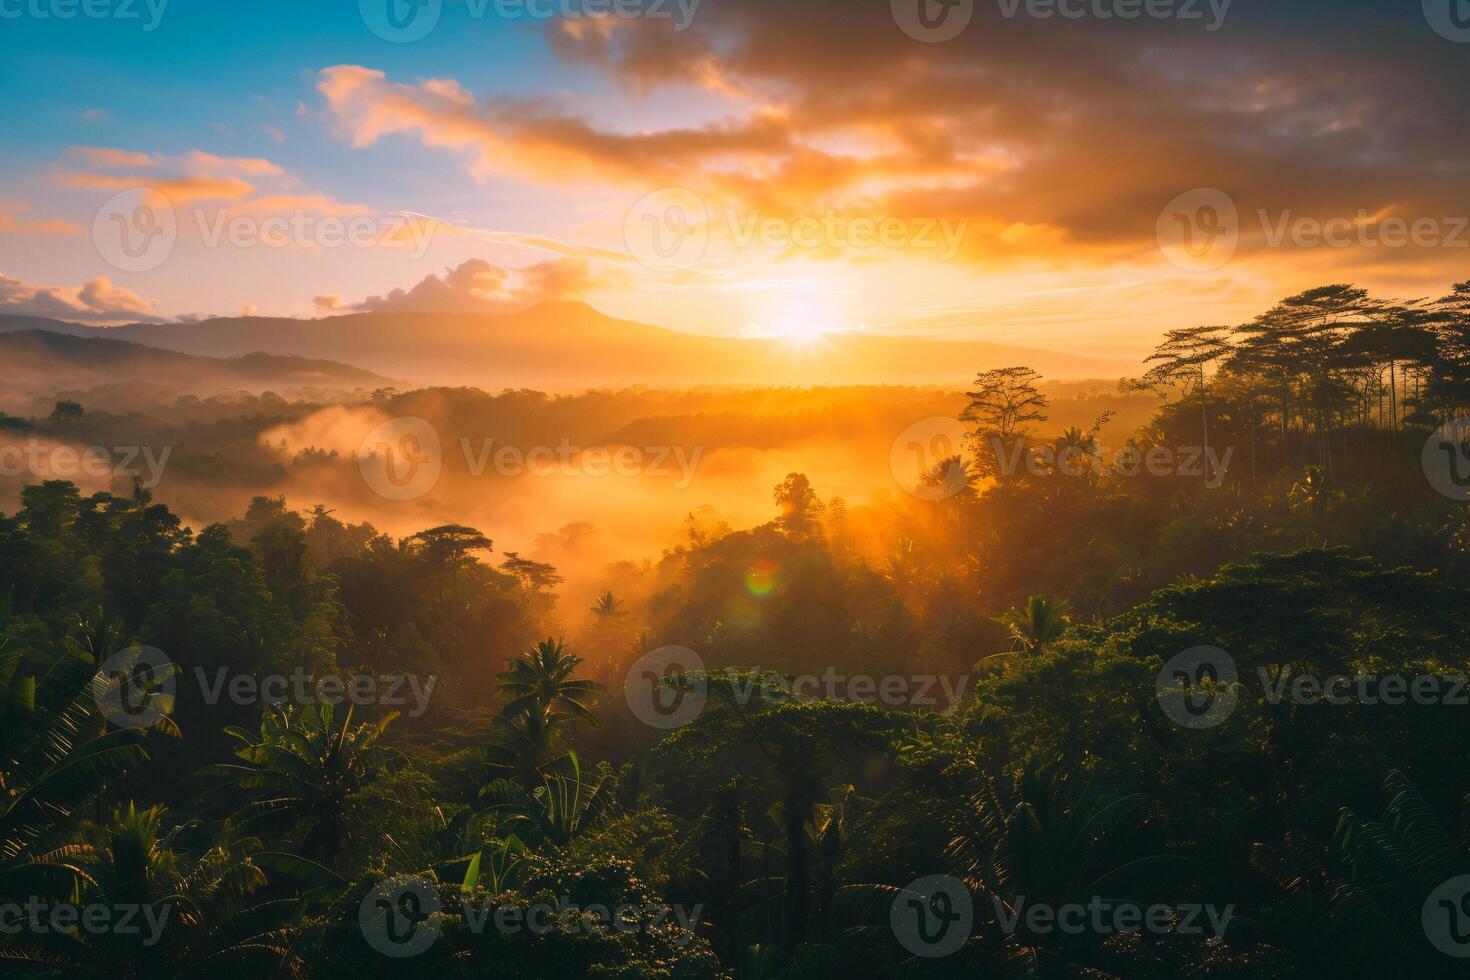 photo lever du soleil plus de bali jungle